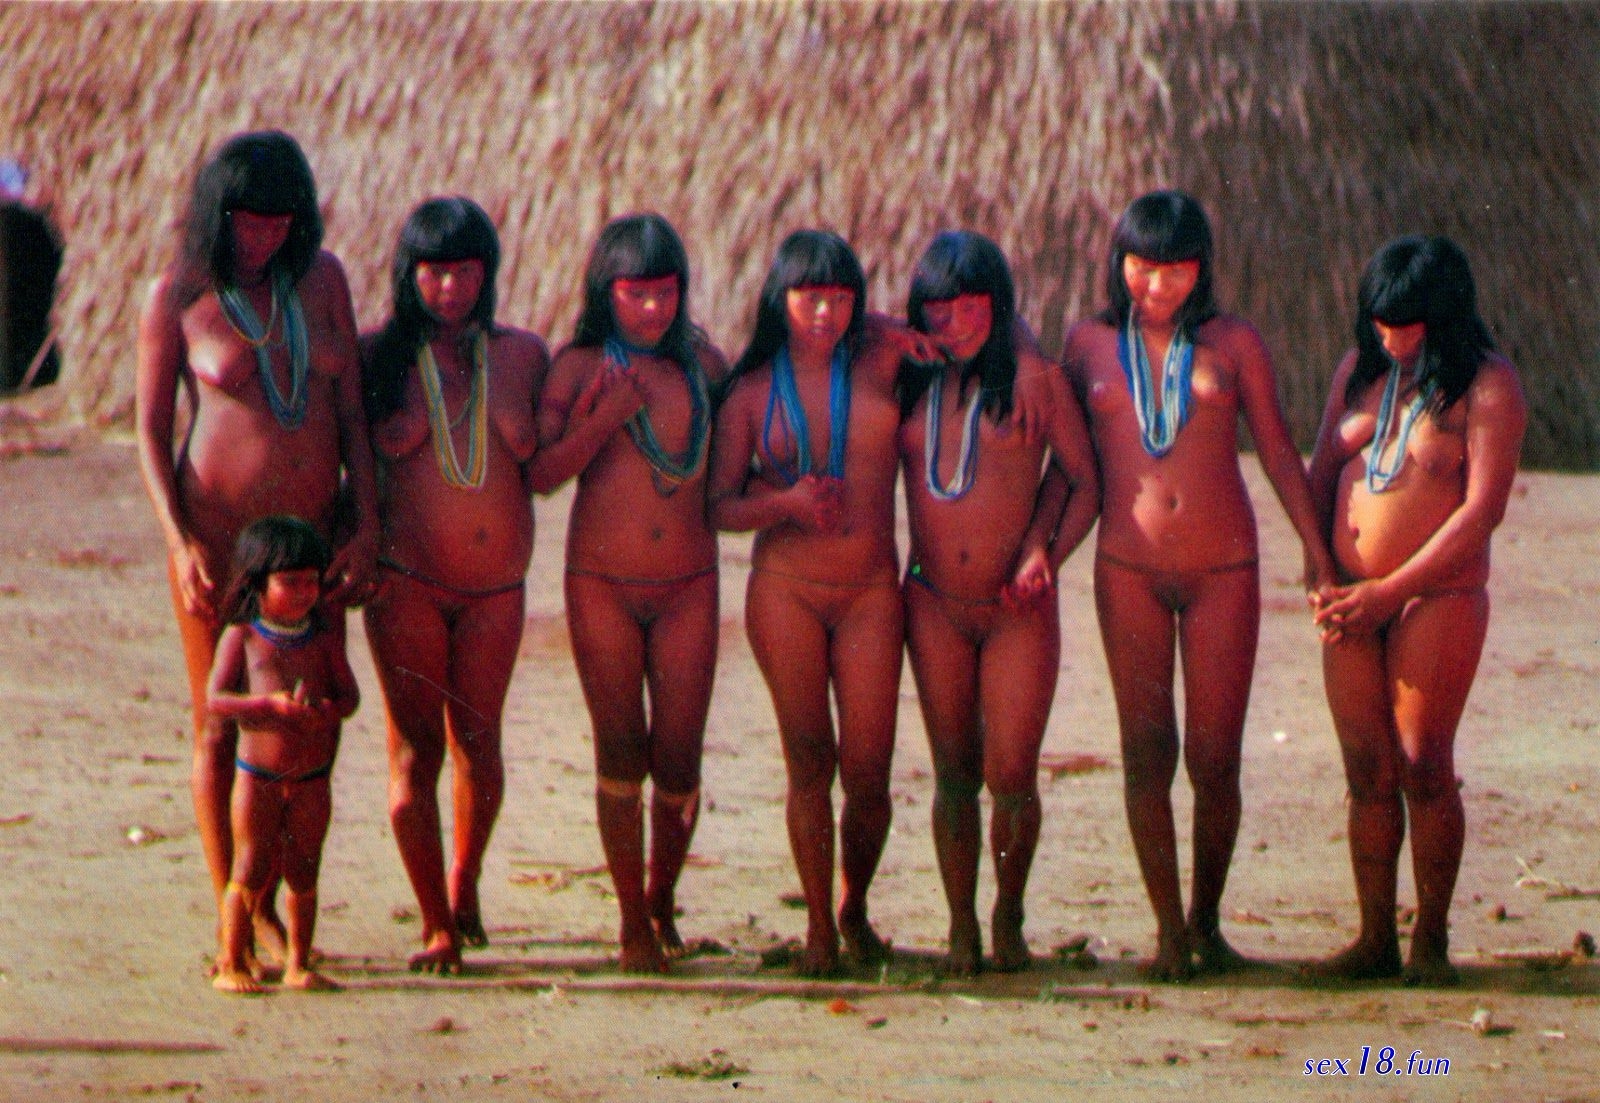 1600px x 1103px - Brazilian Tribes (74 photos) - porn photo